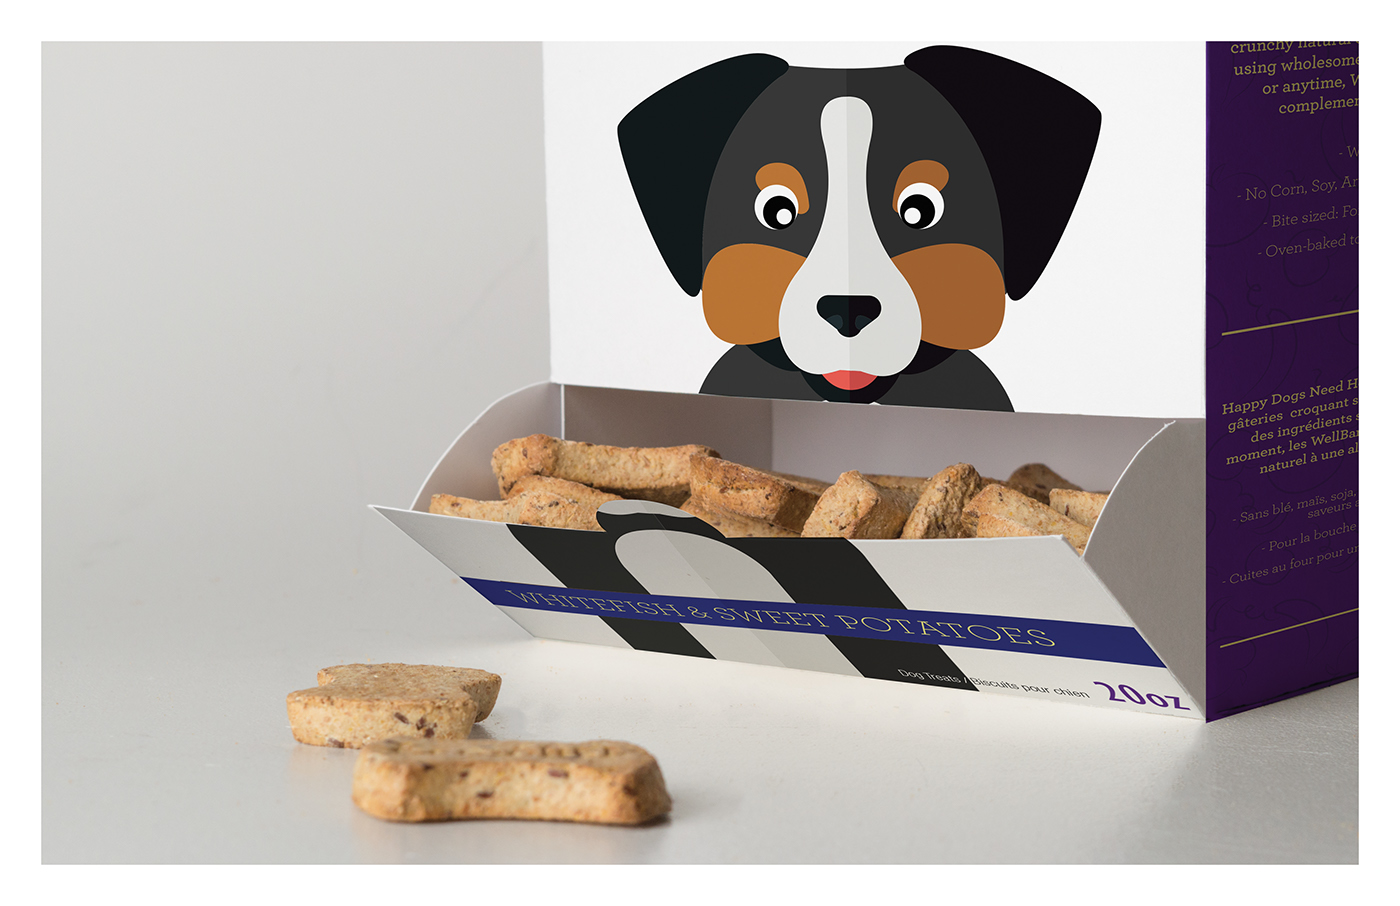 Dog treats packagin Rebrand wellbars Dog biscuits